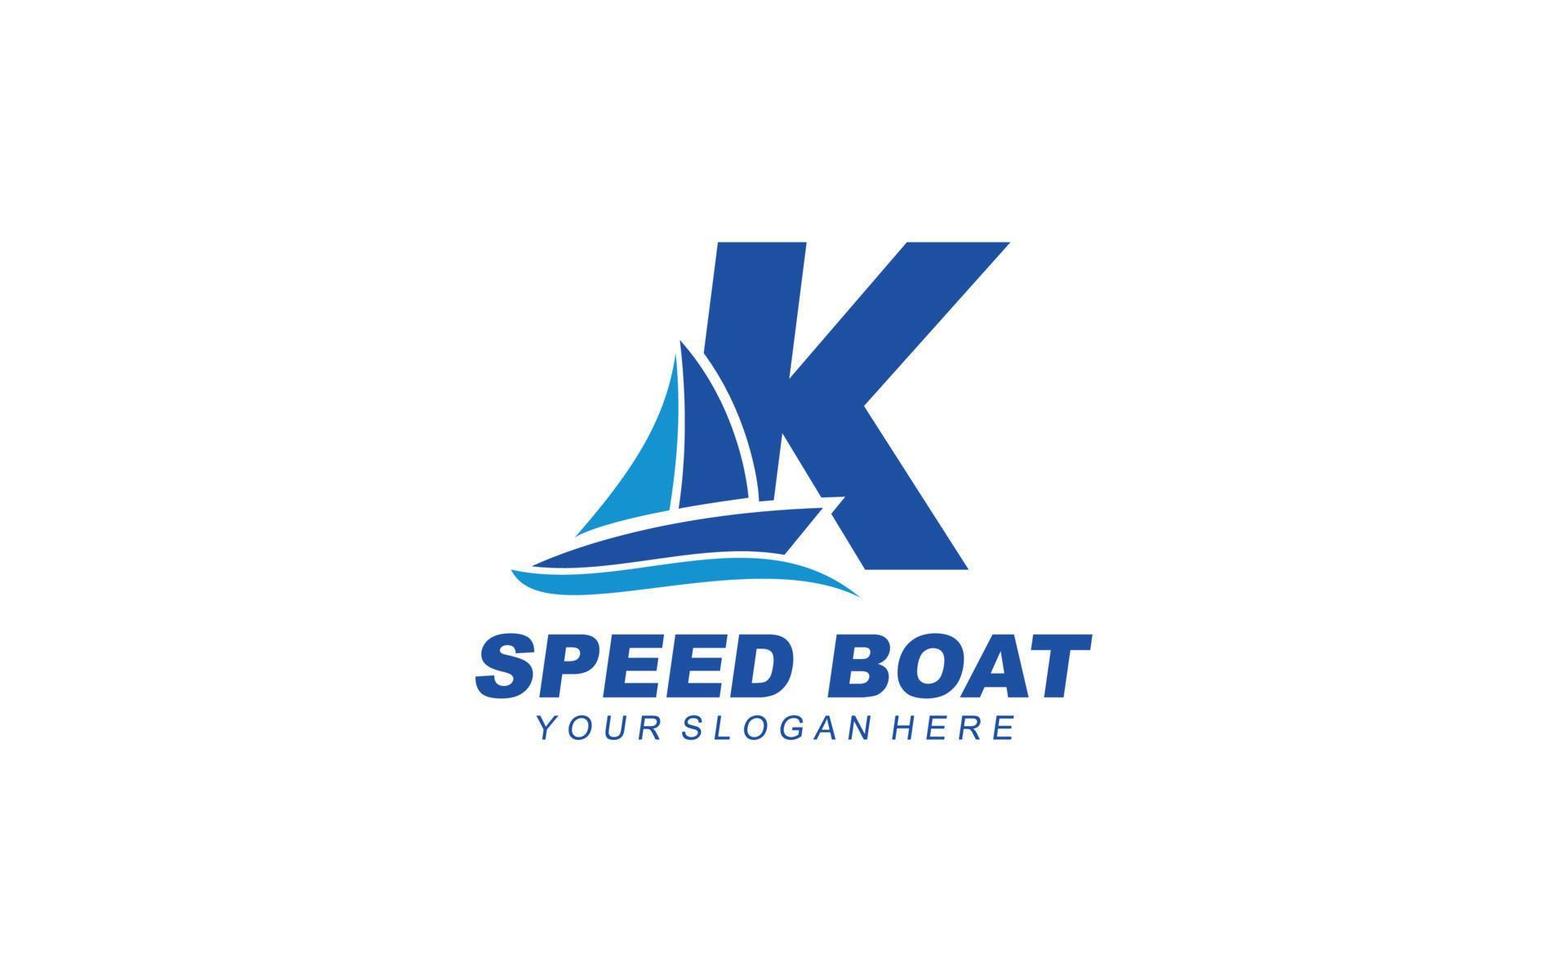 k barco logo diseño inspiración. vector letra modelo diseño para marca.